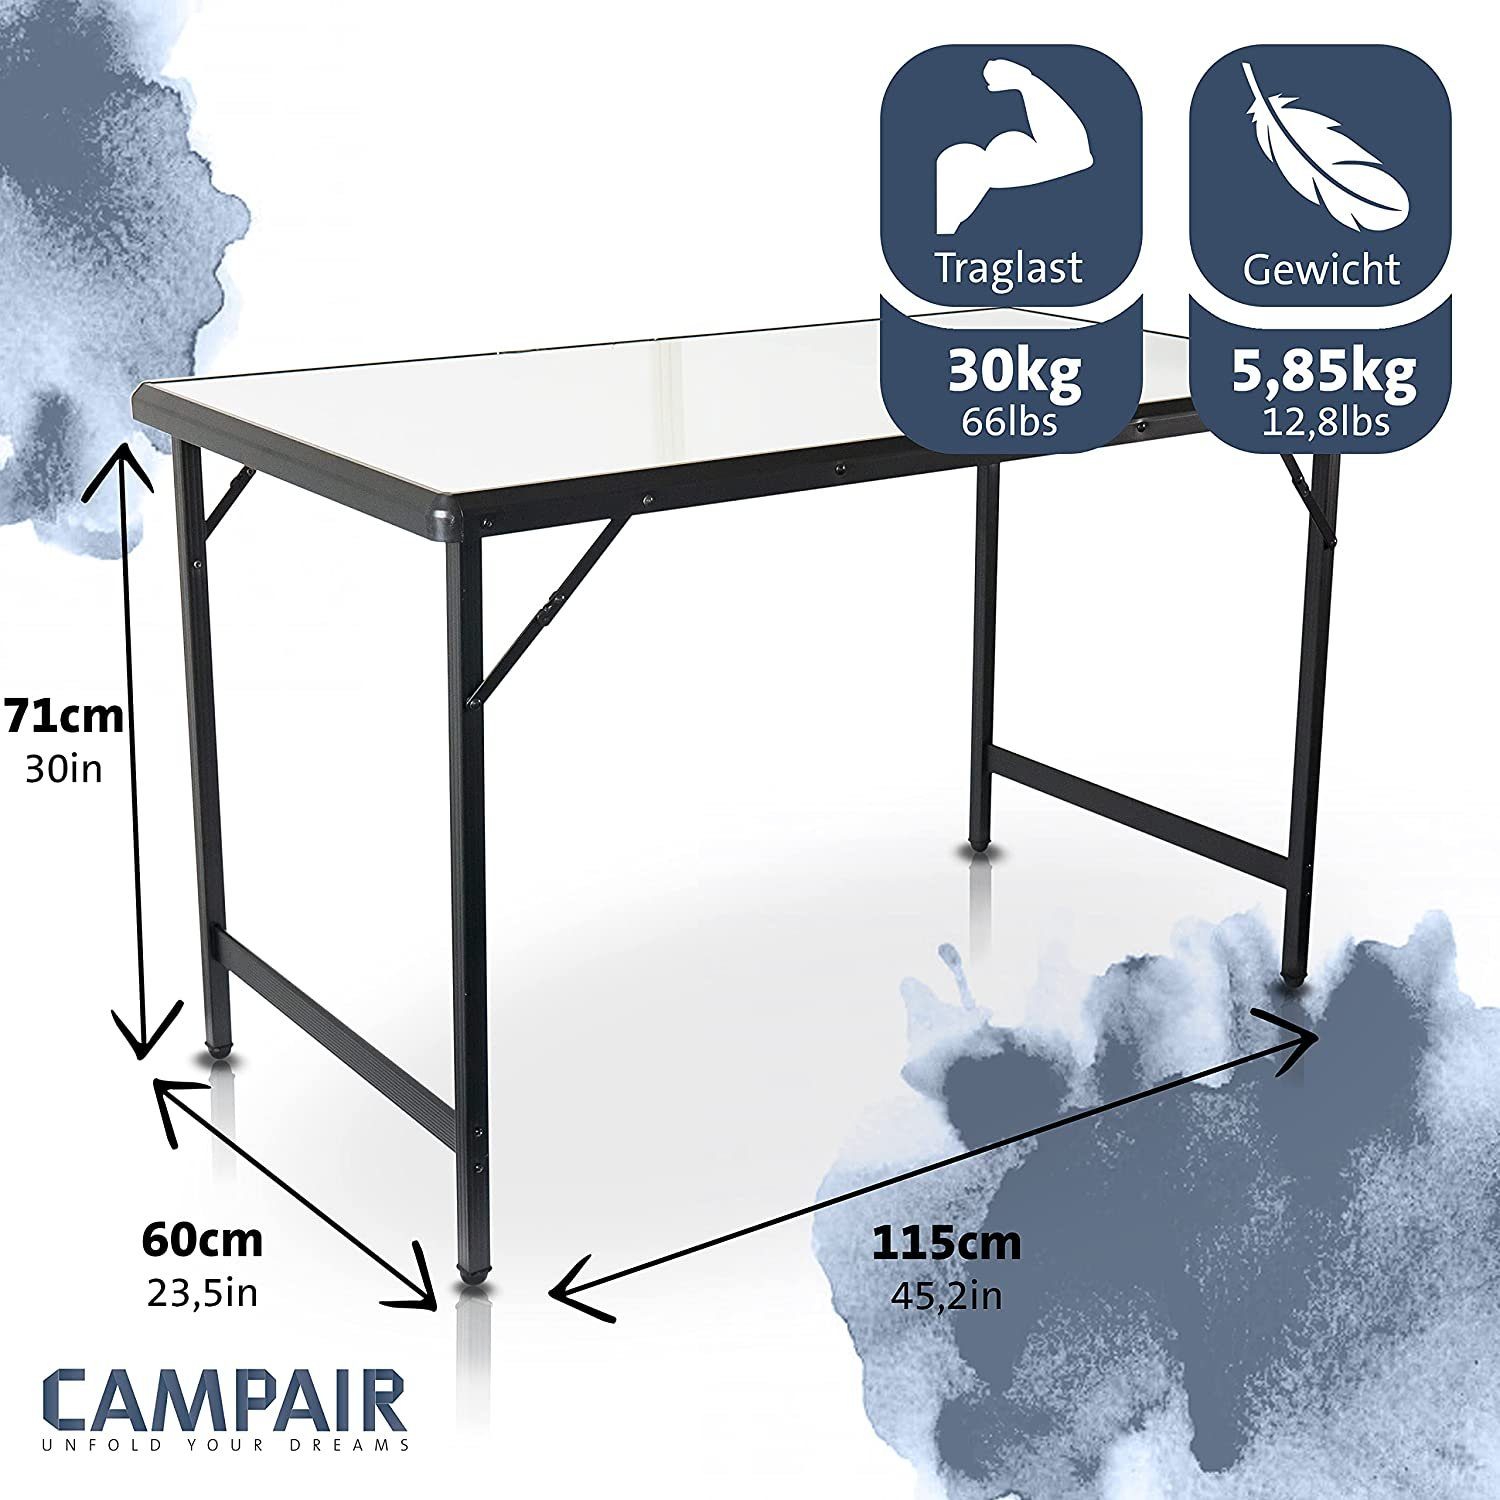 CAMPAIR Campingtisch Falttisch für Leichter Garten Klappbarer Aluminium Camping, aus Reise